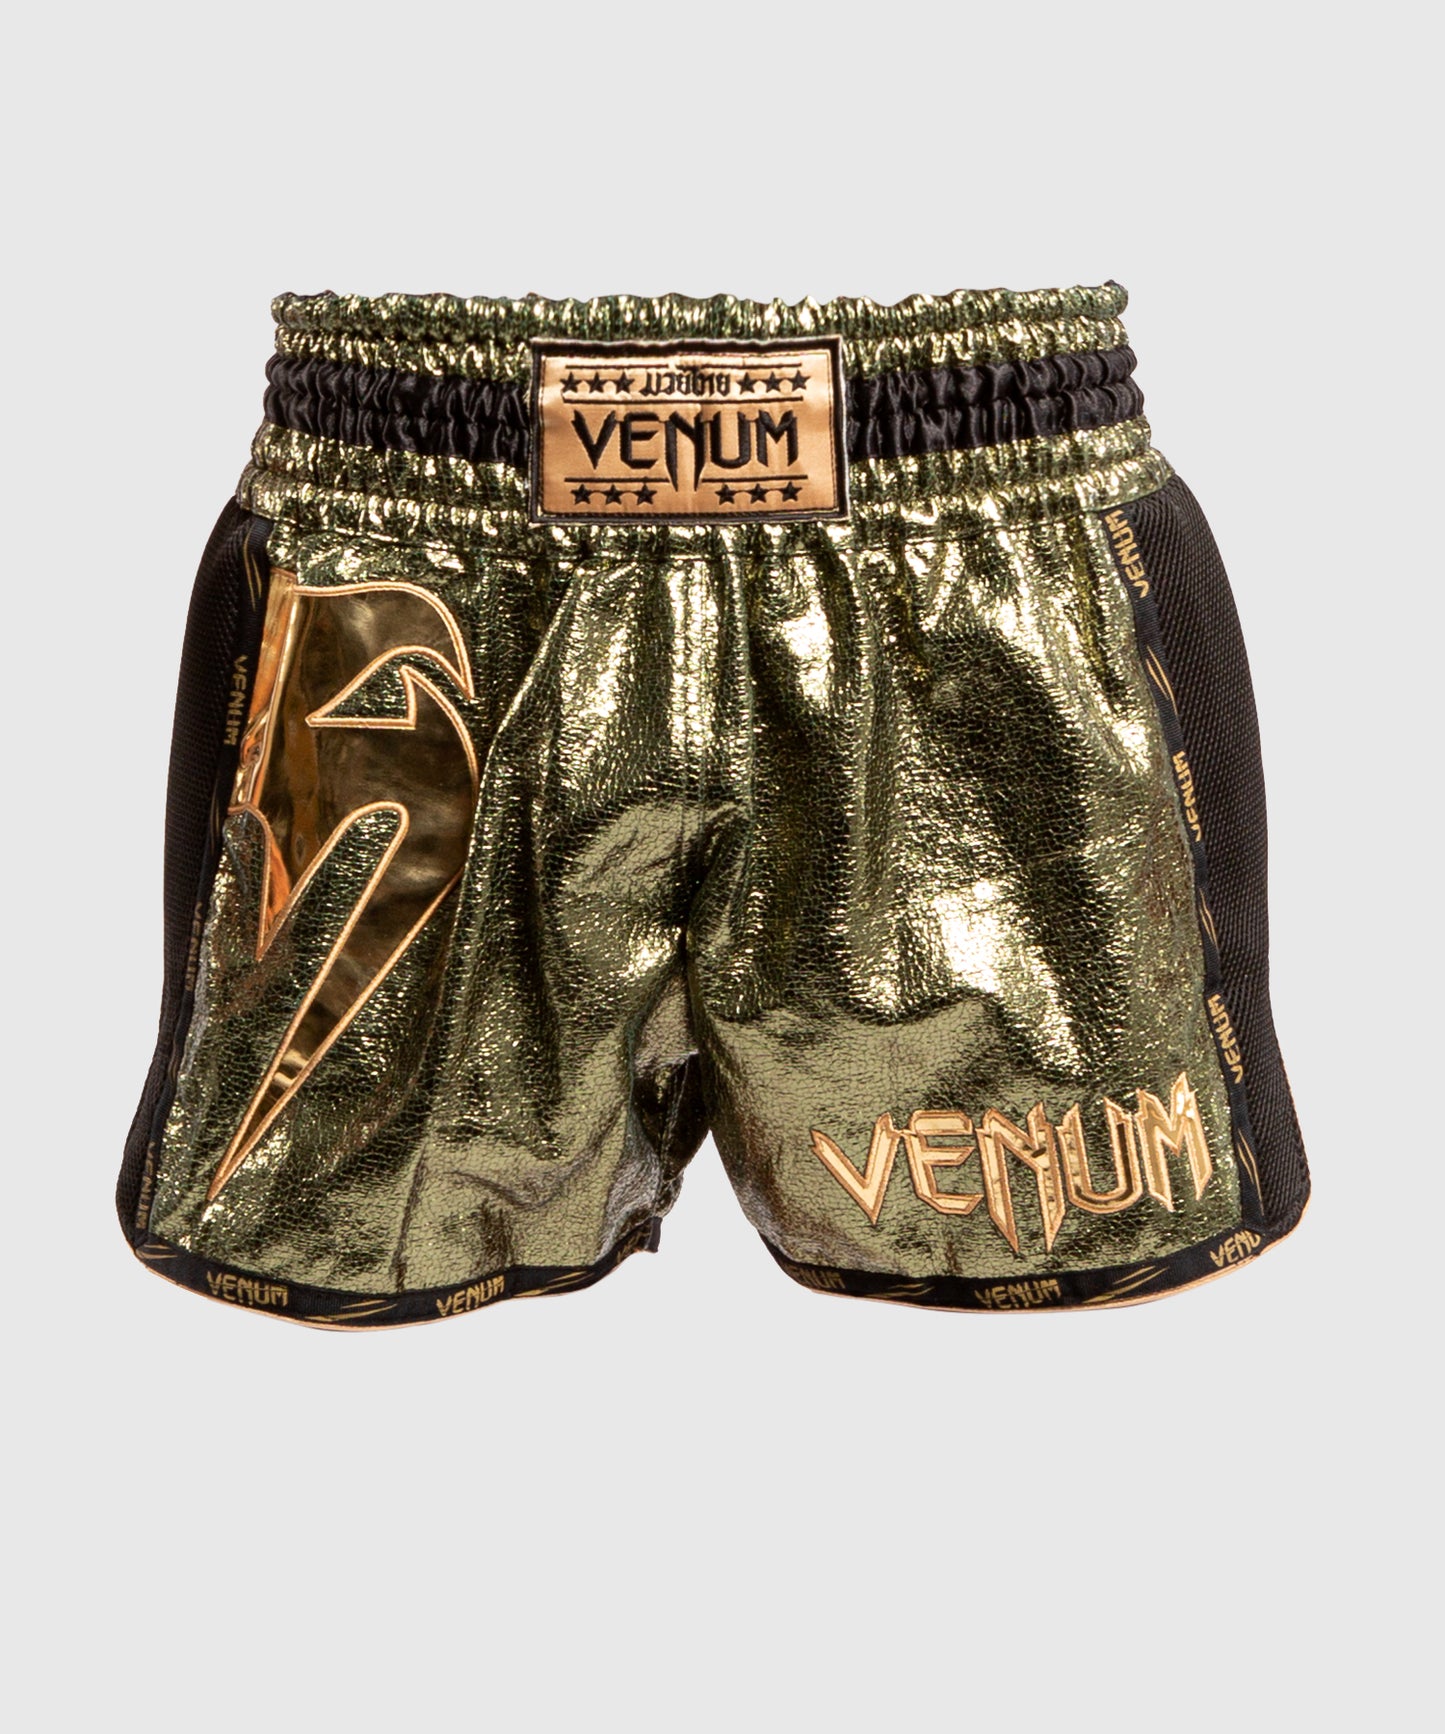 Venum Giant Foil Muay Thai Shorts - Khaki/Gold